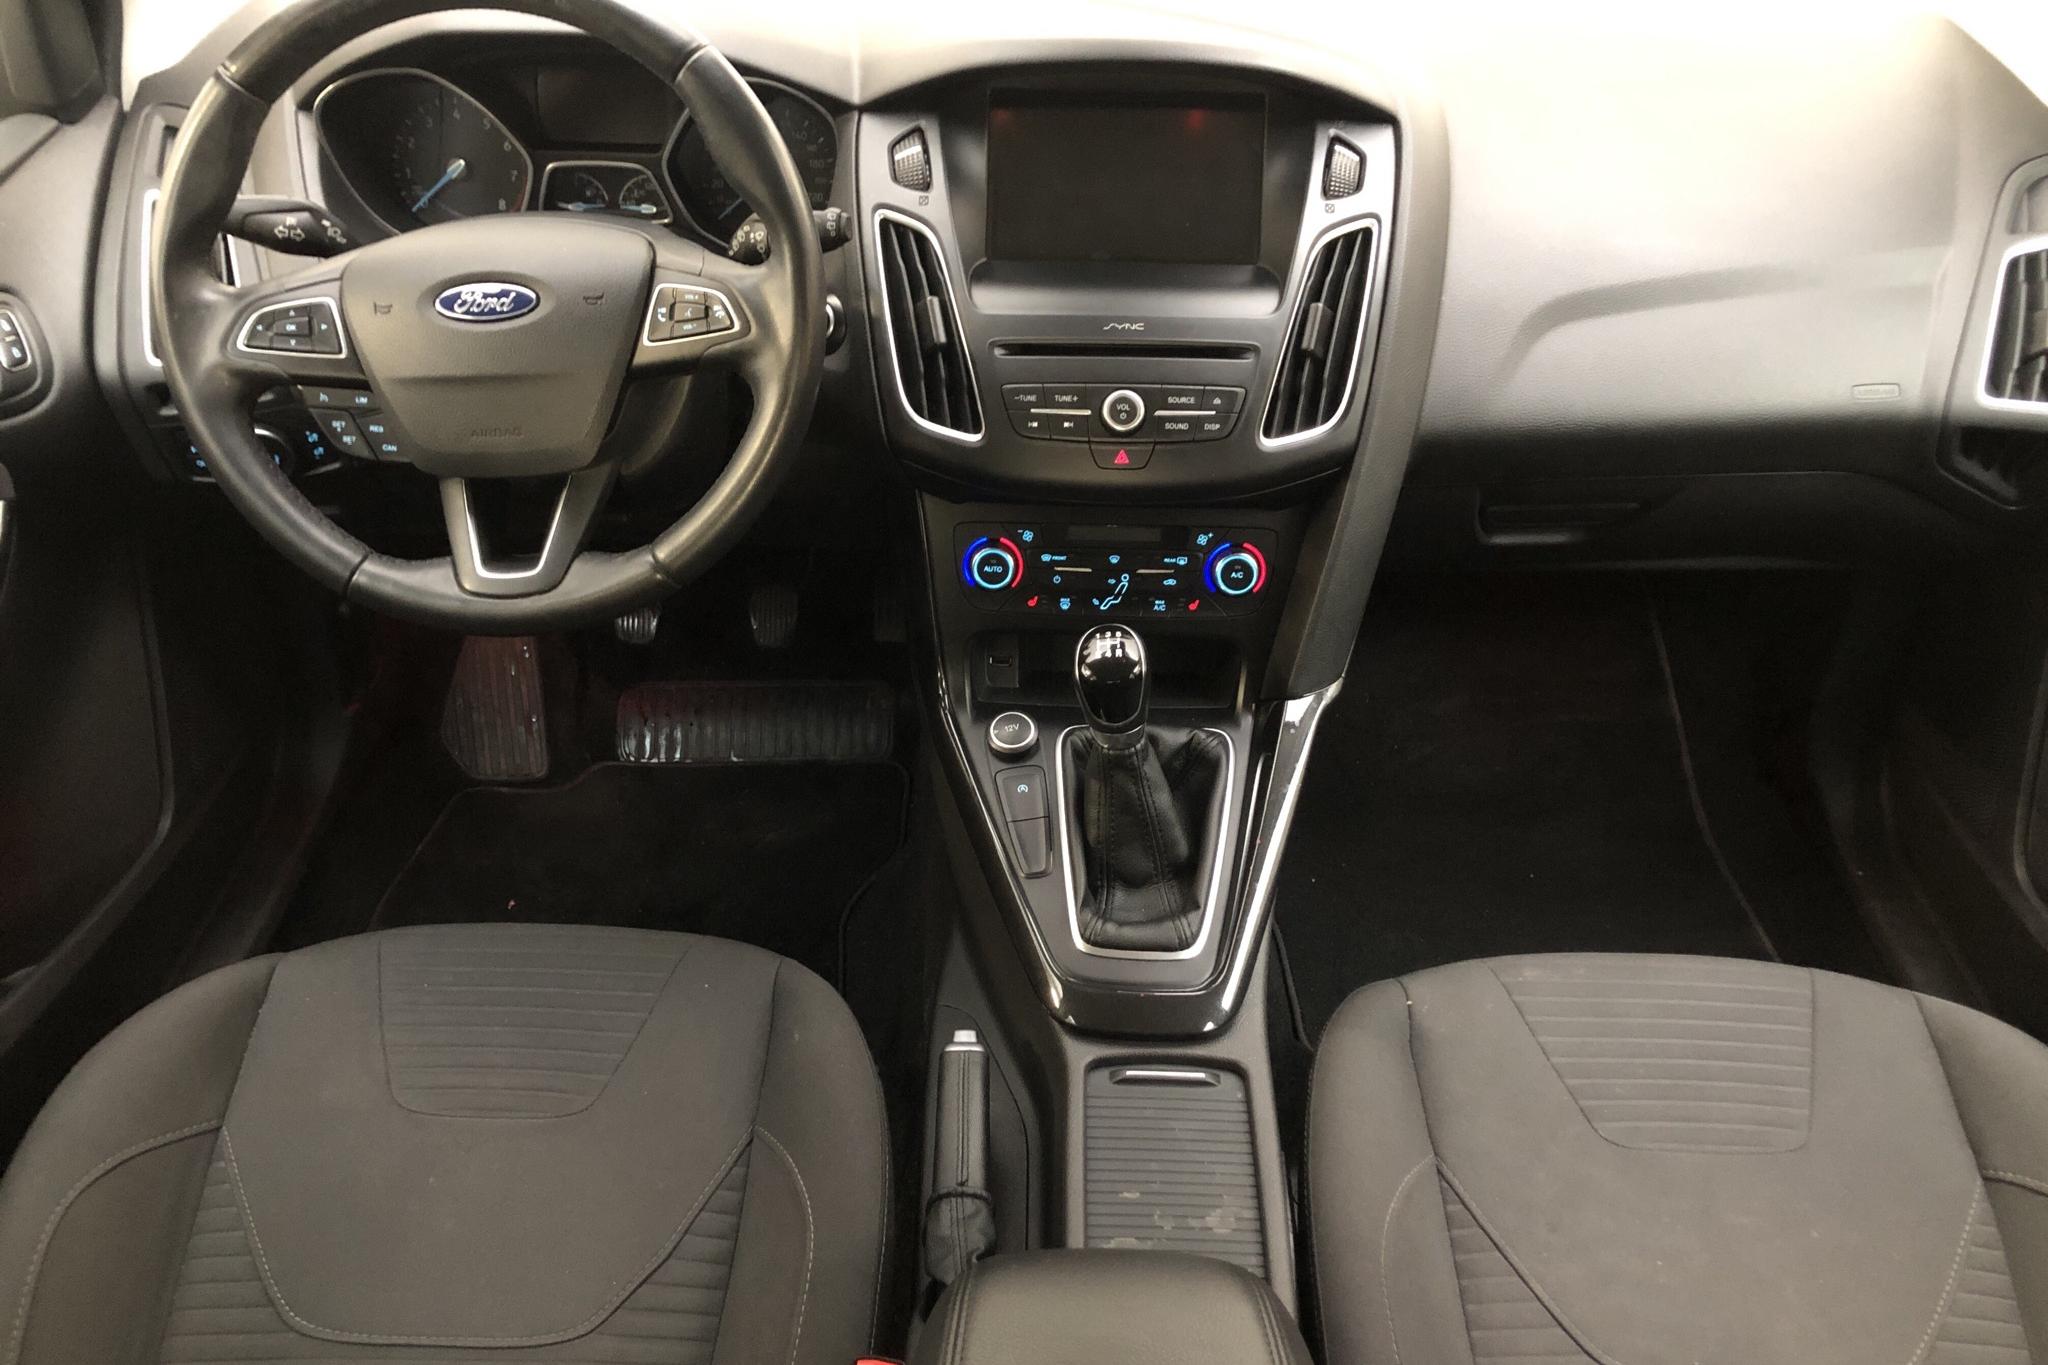 Ford Focus 1.0 EcoBoost Kombi (100hk) - 9 712 mil - Manuell - vit - 2016